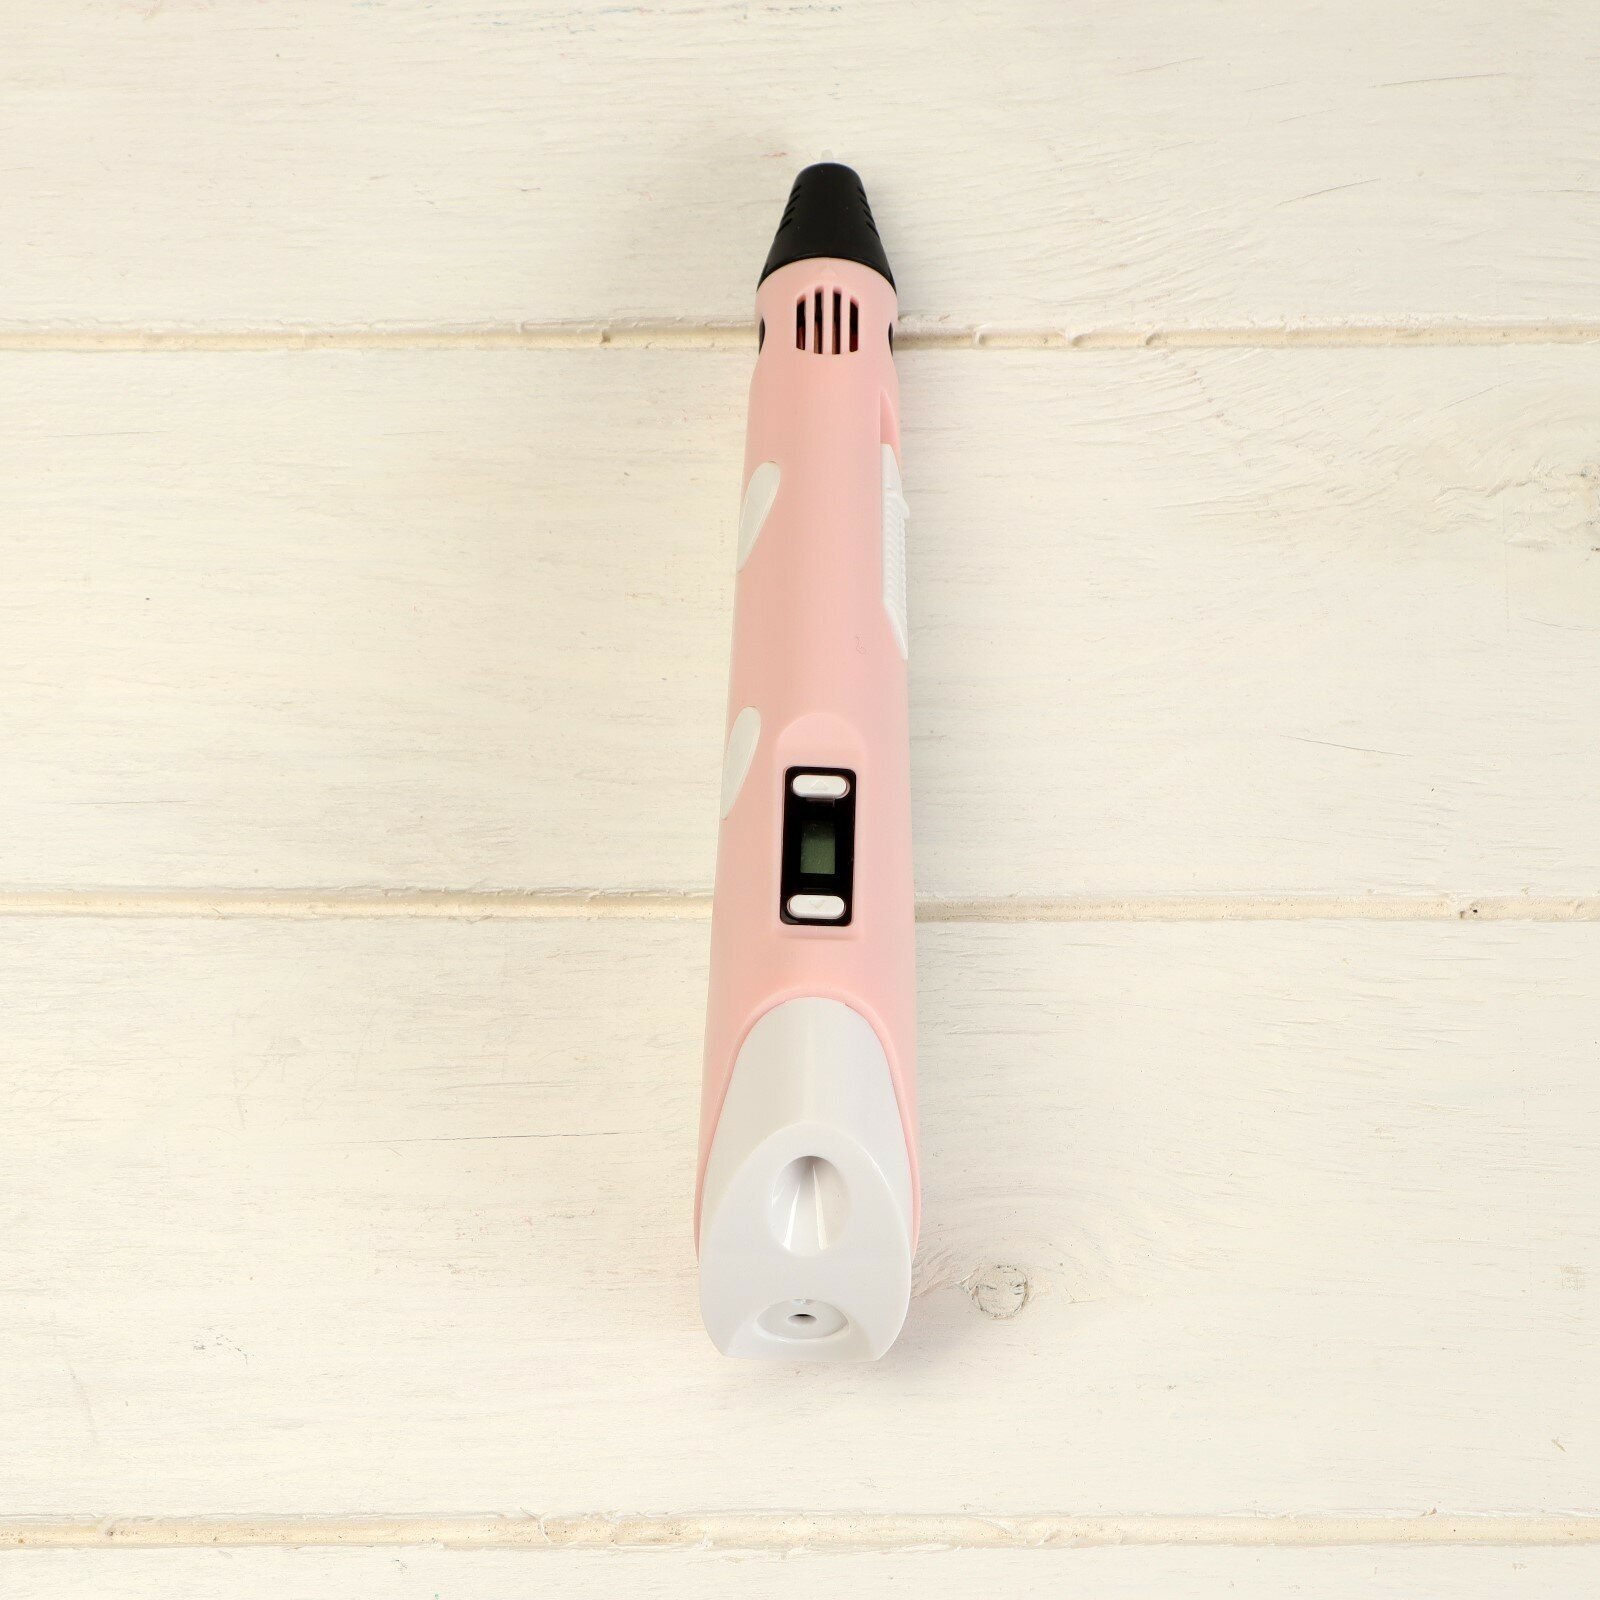 Комплект в тубусе 3Д ручка с дисплеем розовая + пластик ABS 15 цветов по 10 метров